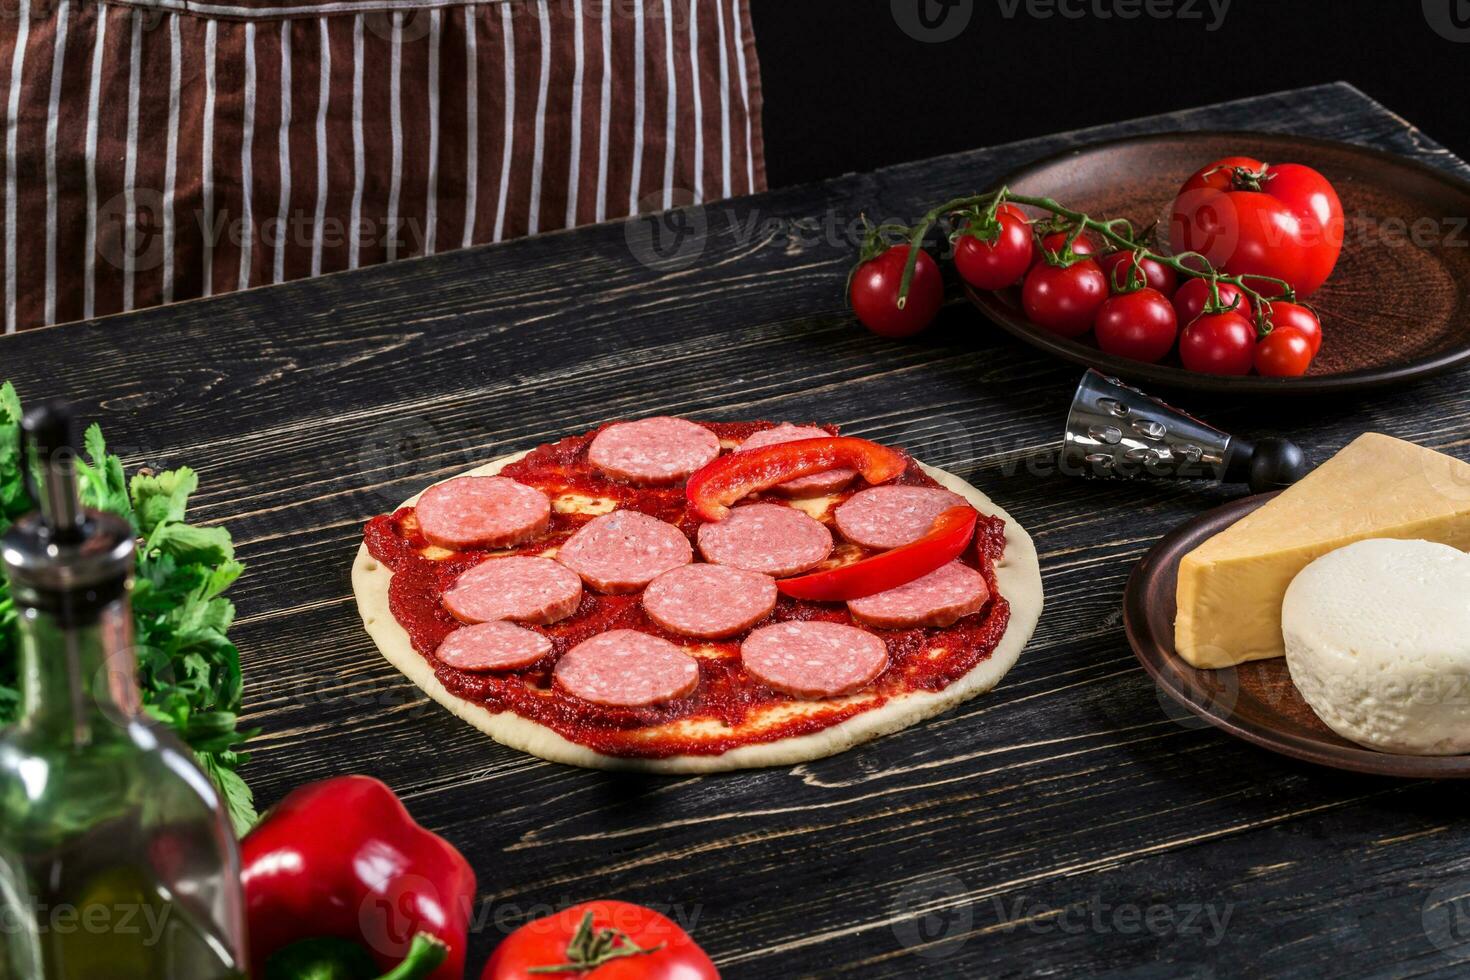 cocinar en el cocina poniendo el ingredientes en el Pizza. Pizza concepto. producción y entrega de alimento. foto